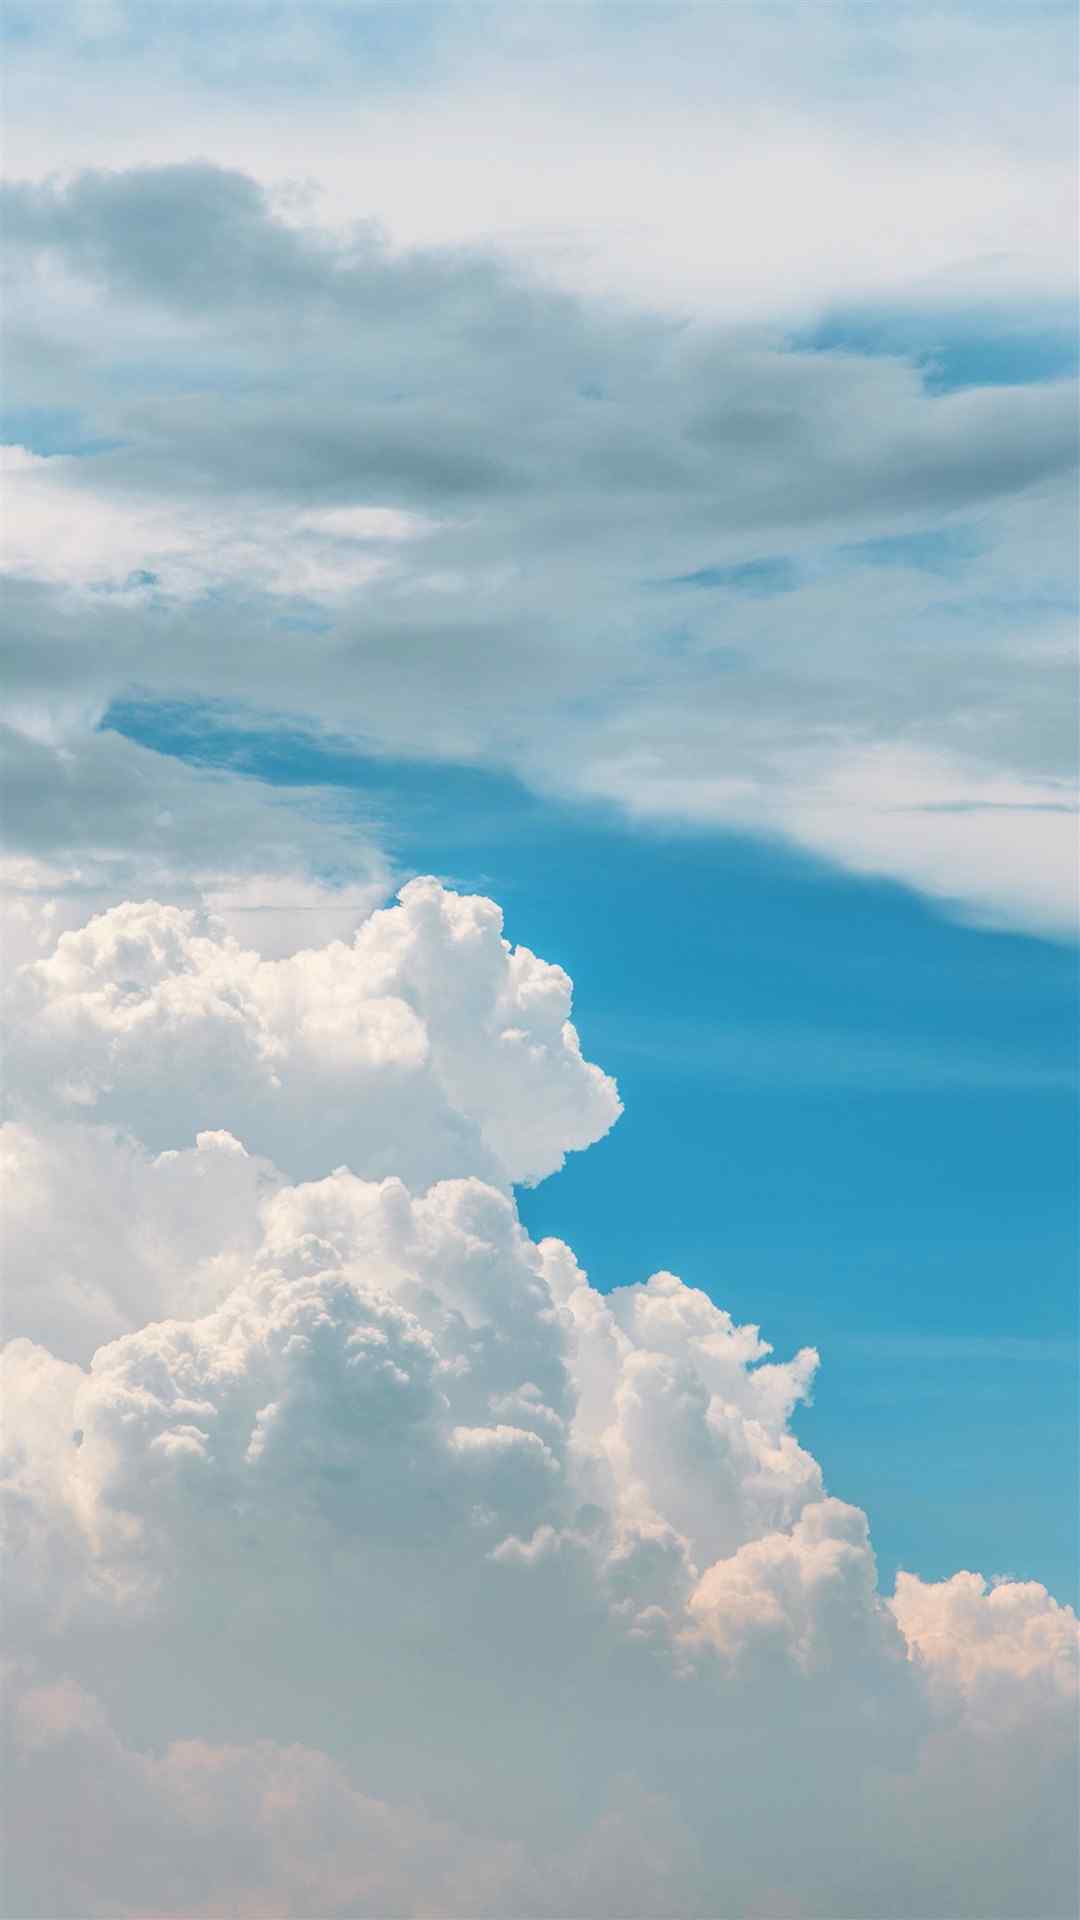 风景意象图 蓝天白云大海 手机壁纸摄影师林… - 高清图片，堆糖，美图壁纸兴趣社区